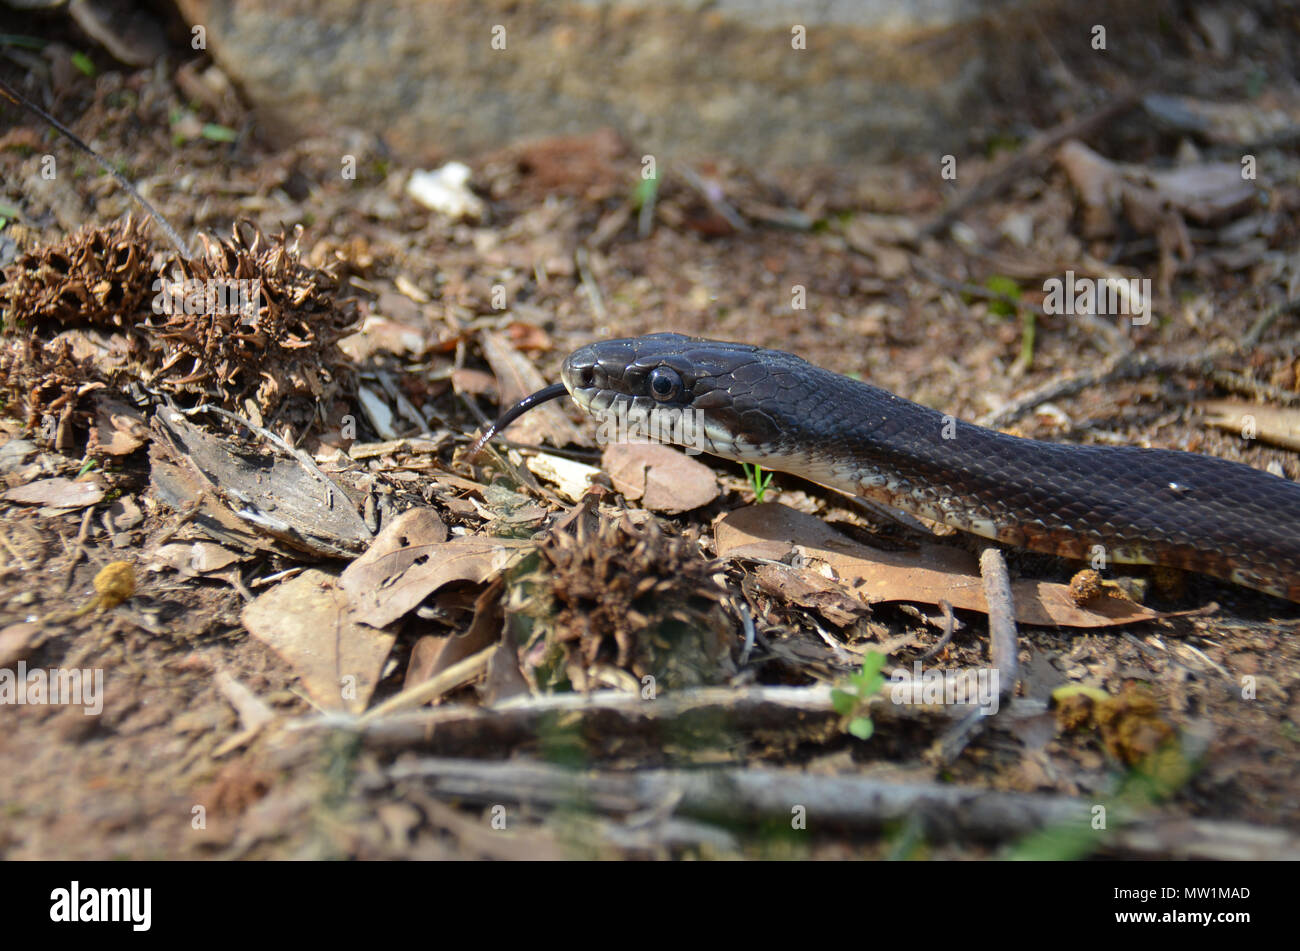 Un serpent non venimeux trouvé ici dans la campagne du nord-est de la Géorgie, USA Banque D'Images